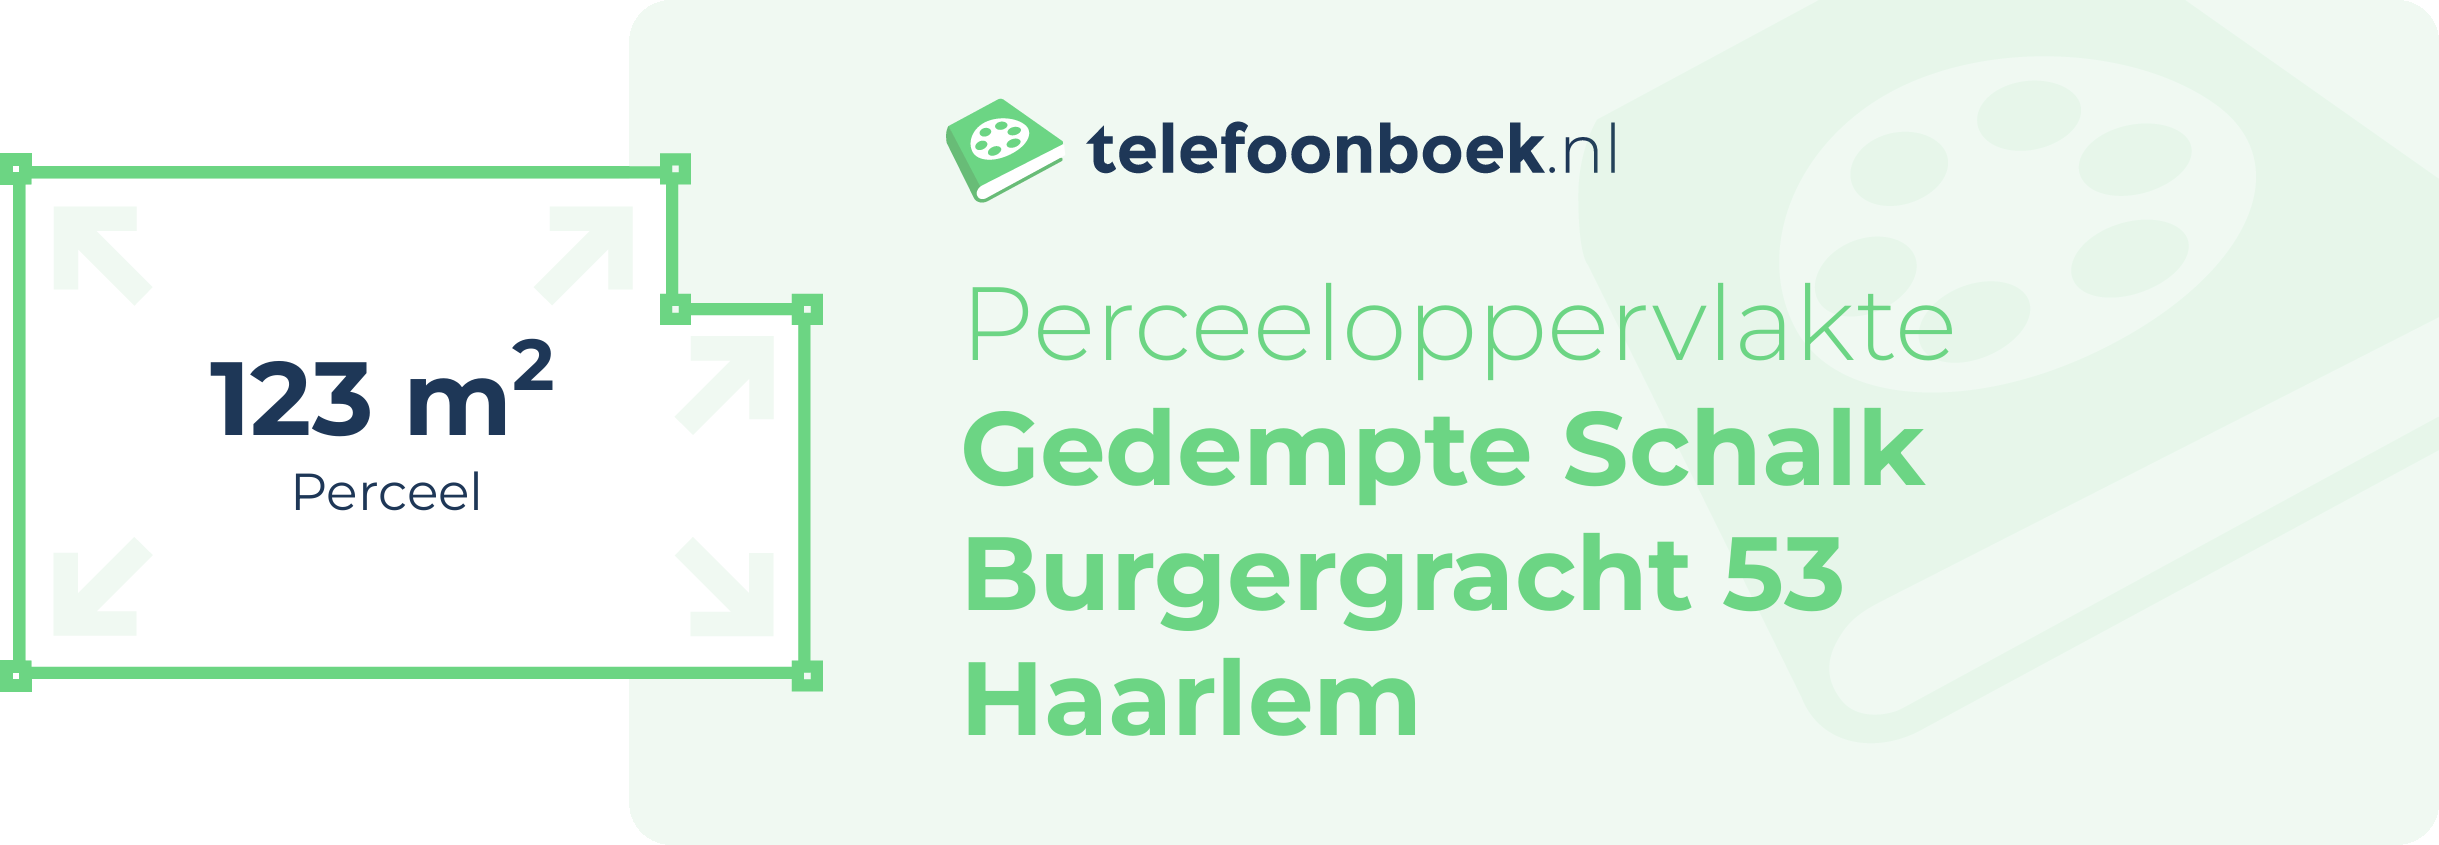 Perceeloppervlakte Gedempte Schalk Burgergracht 53 Haarlem